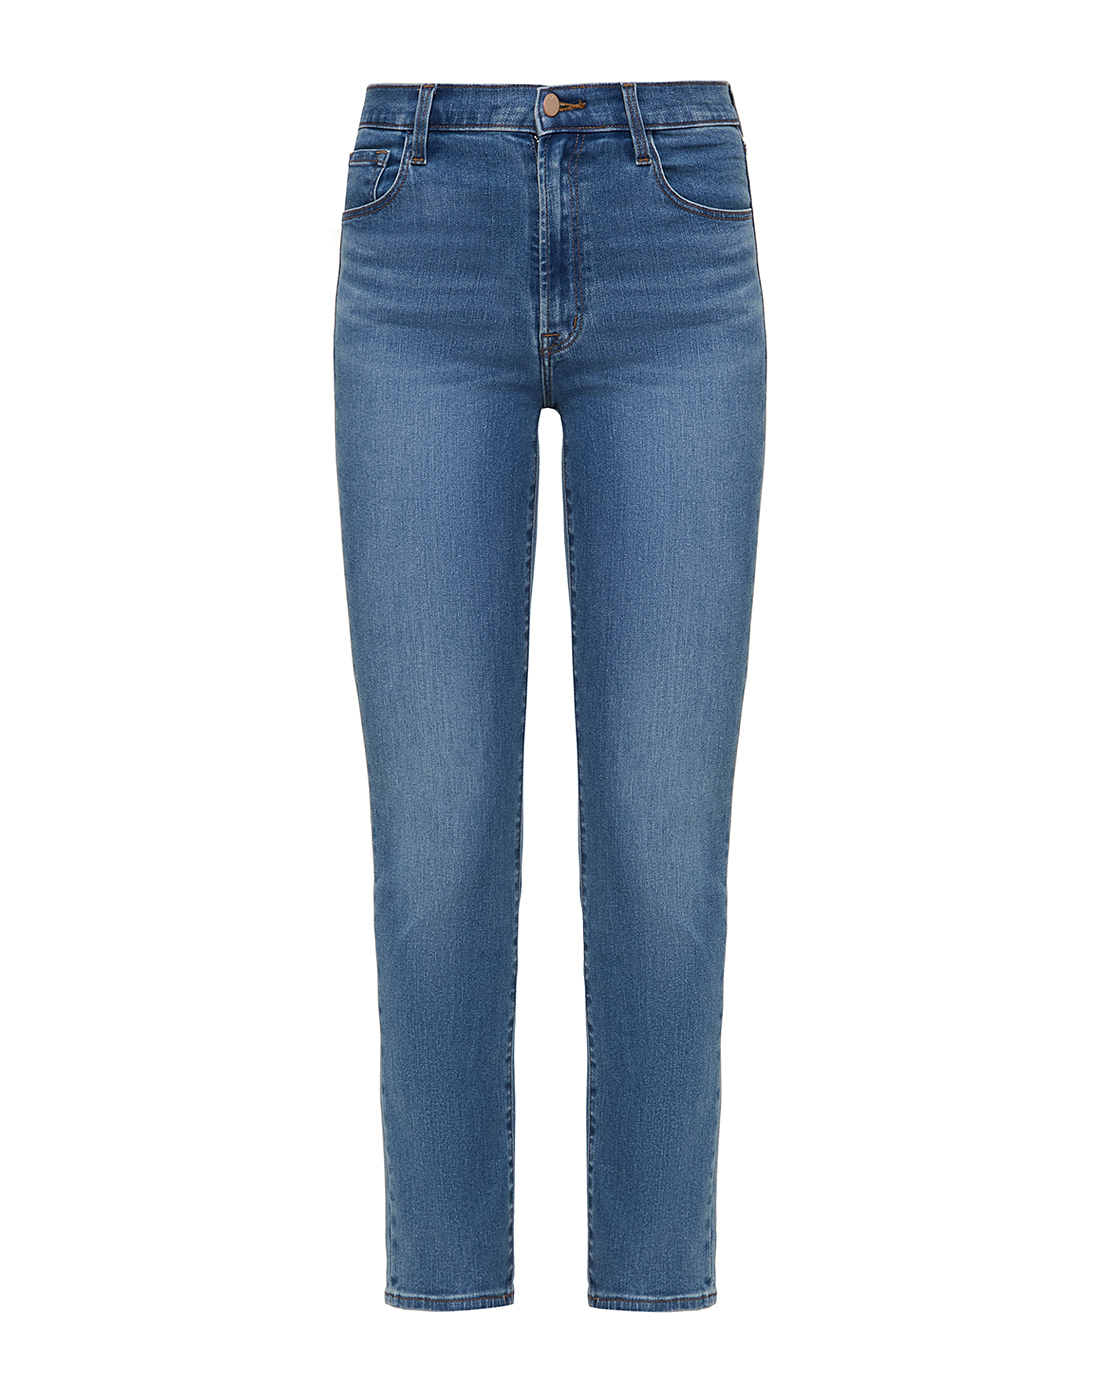 Женские голубые джинсы J BRAND SJB003301-1